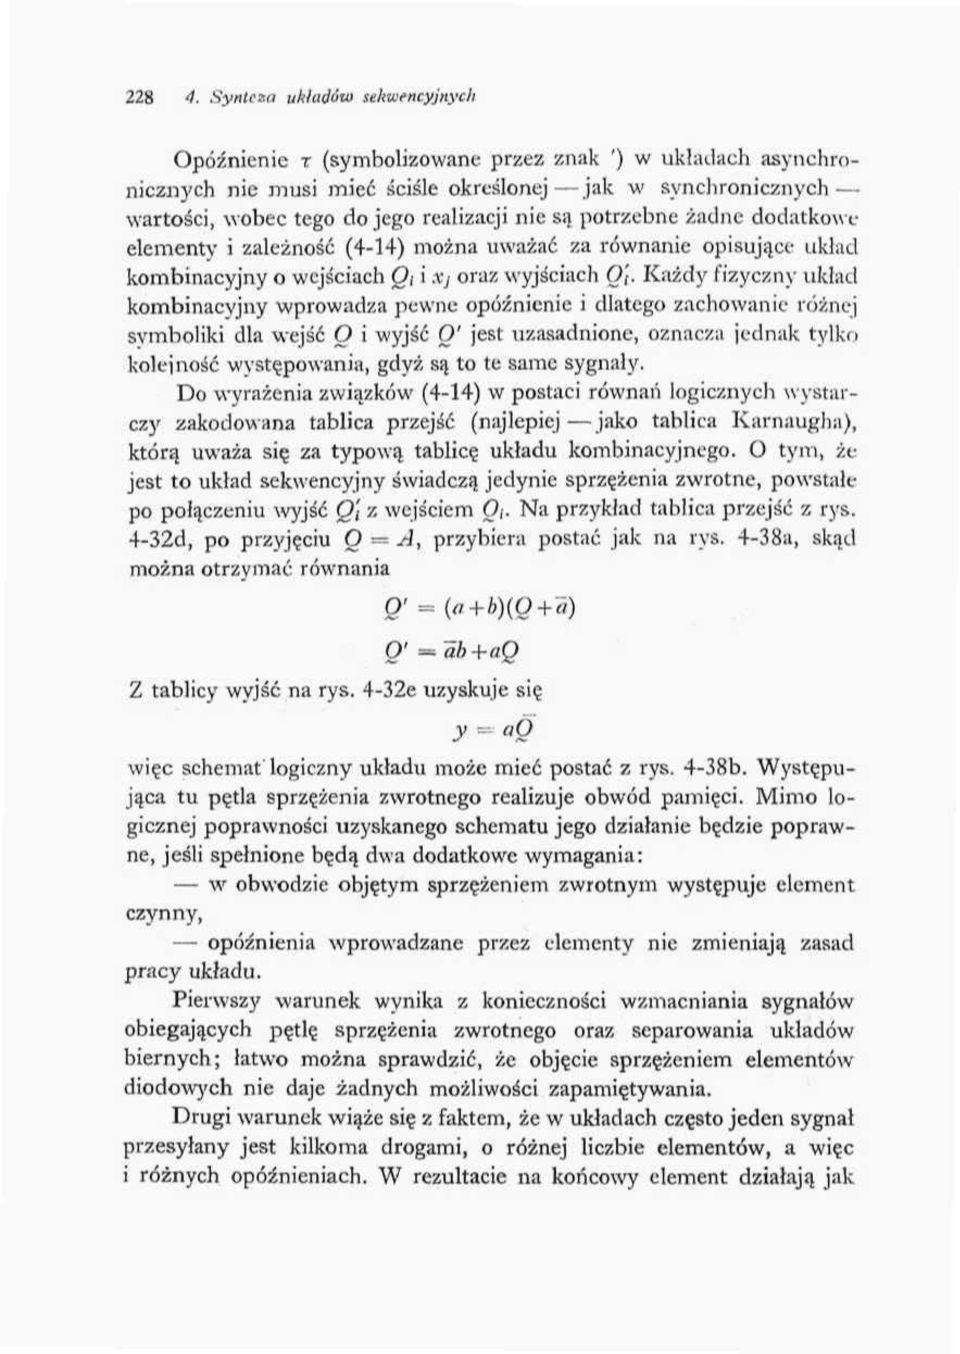 są potrzebne żadne dodatkowa elementy i zależność (44) można uważać za równanie opisujące układ kombinacyjny o wejściach O; i Xj oraz wyjściach O';.